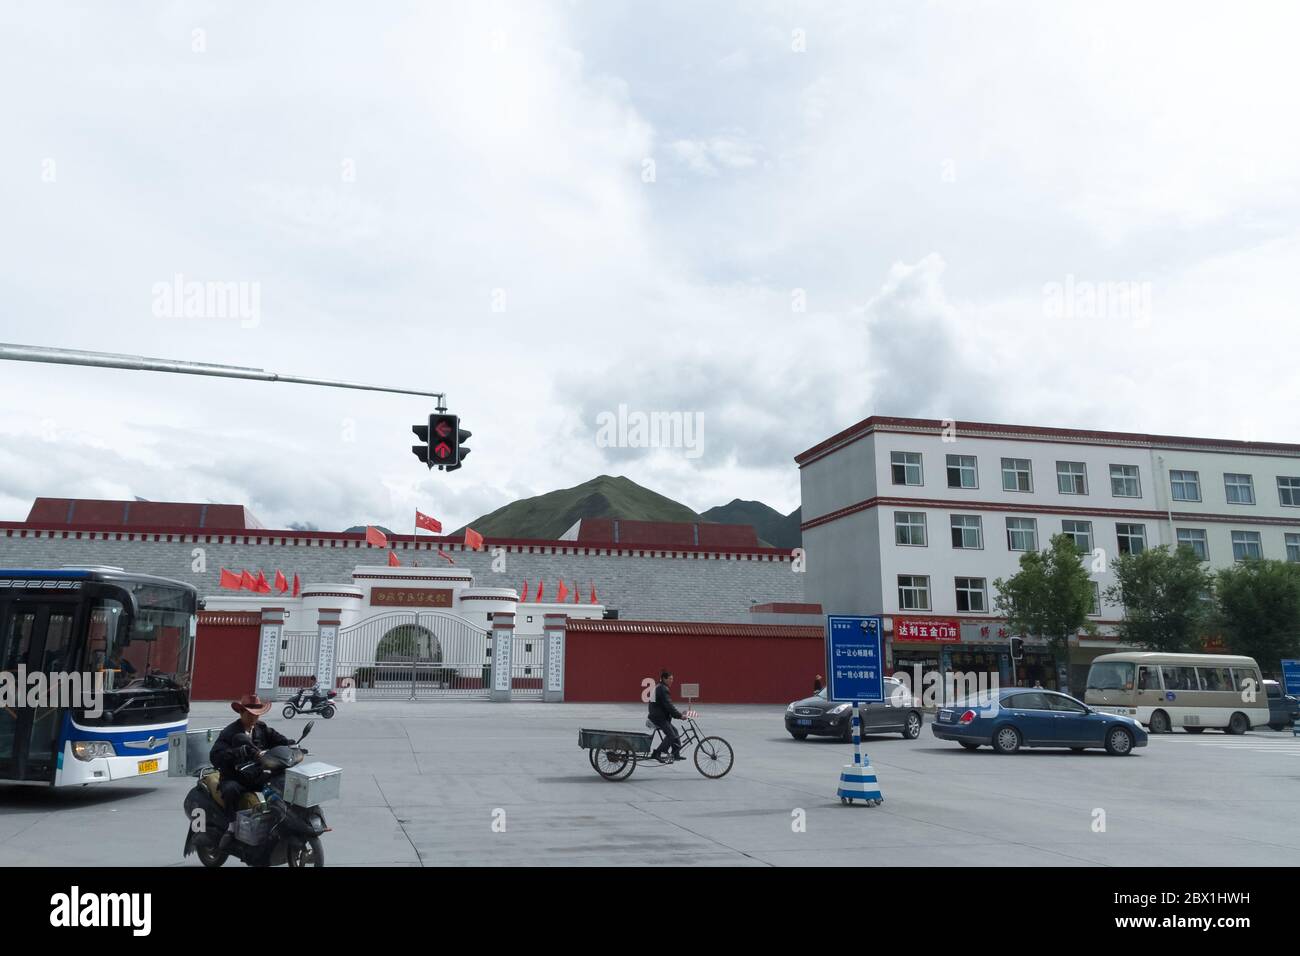 Lhasa, Tibet / China - 20. August 2012: Die Straßenszene der Stadt Lhasa, Tibet Autonome Region, China Stockfoto